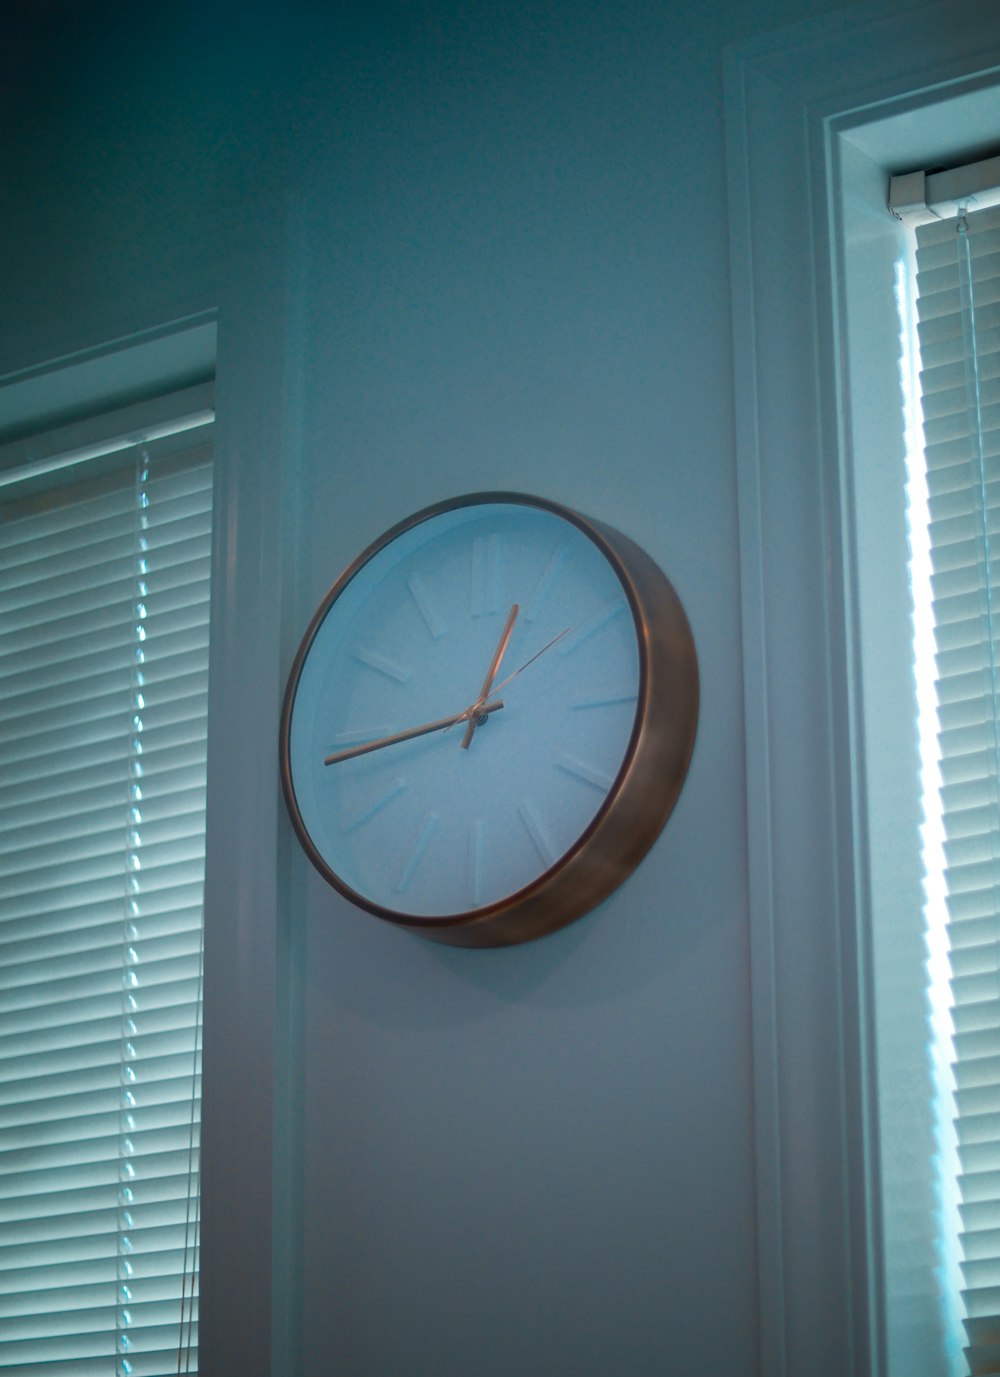 brown round analog wall clock at 11 00